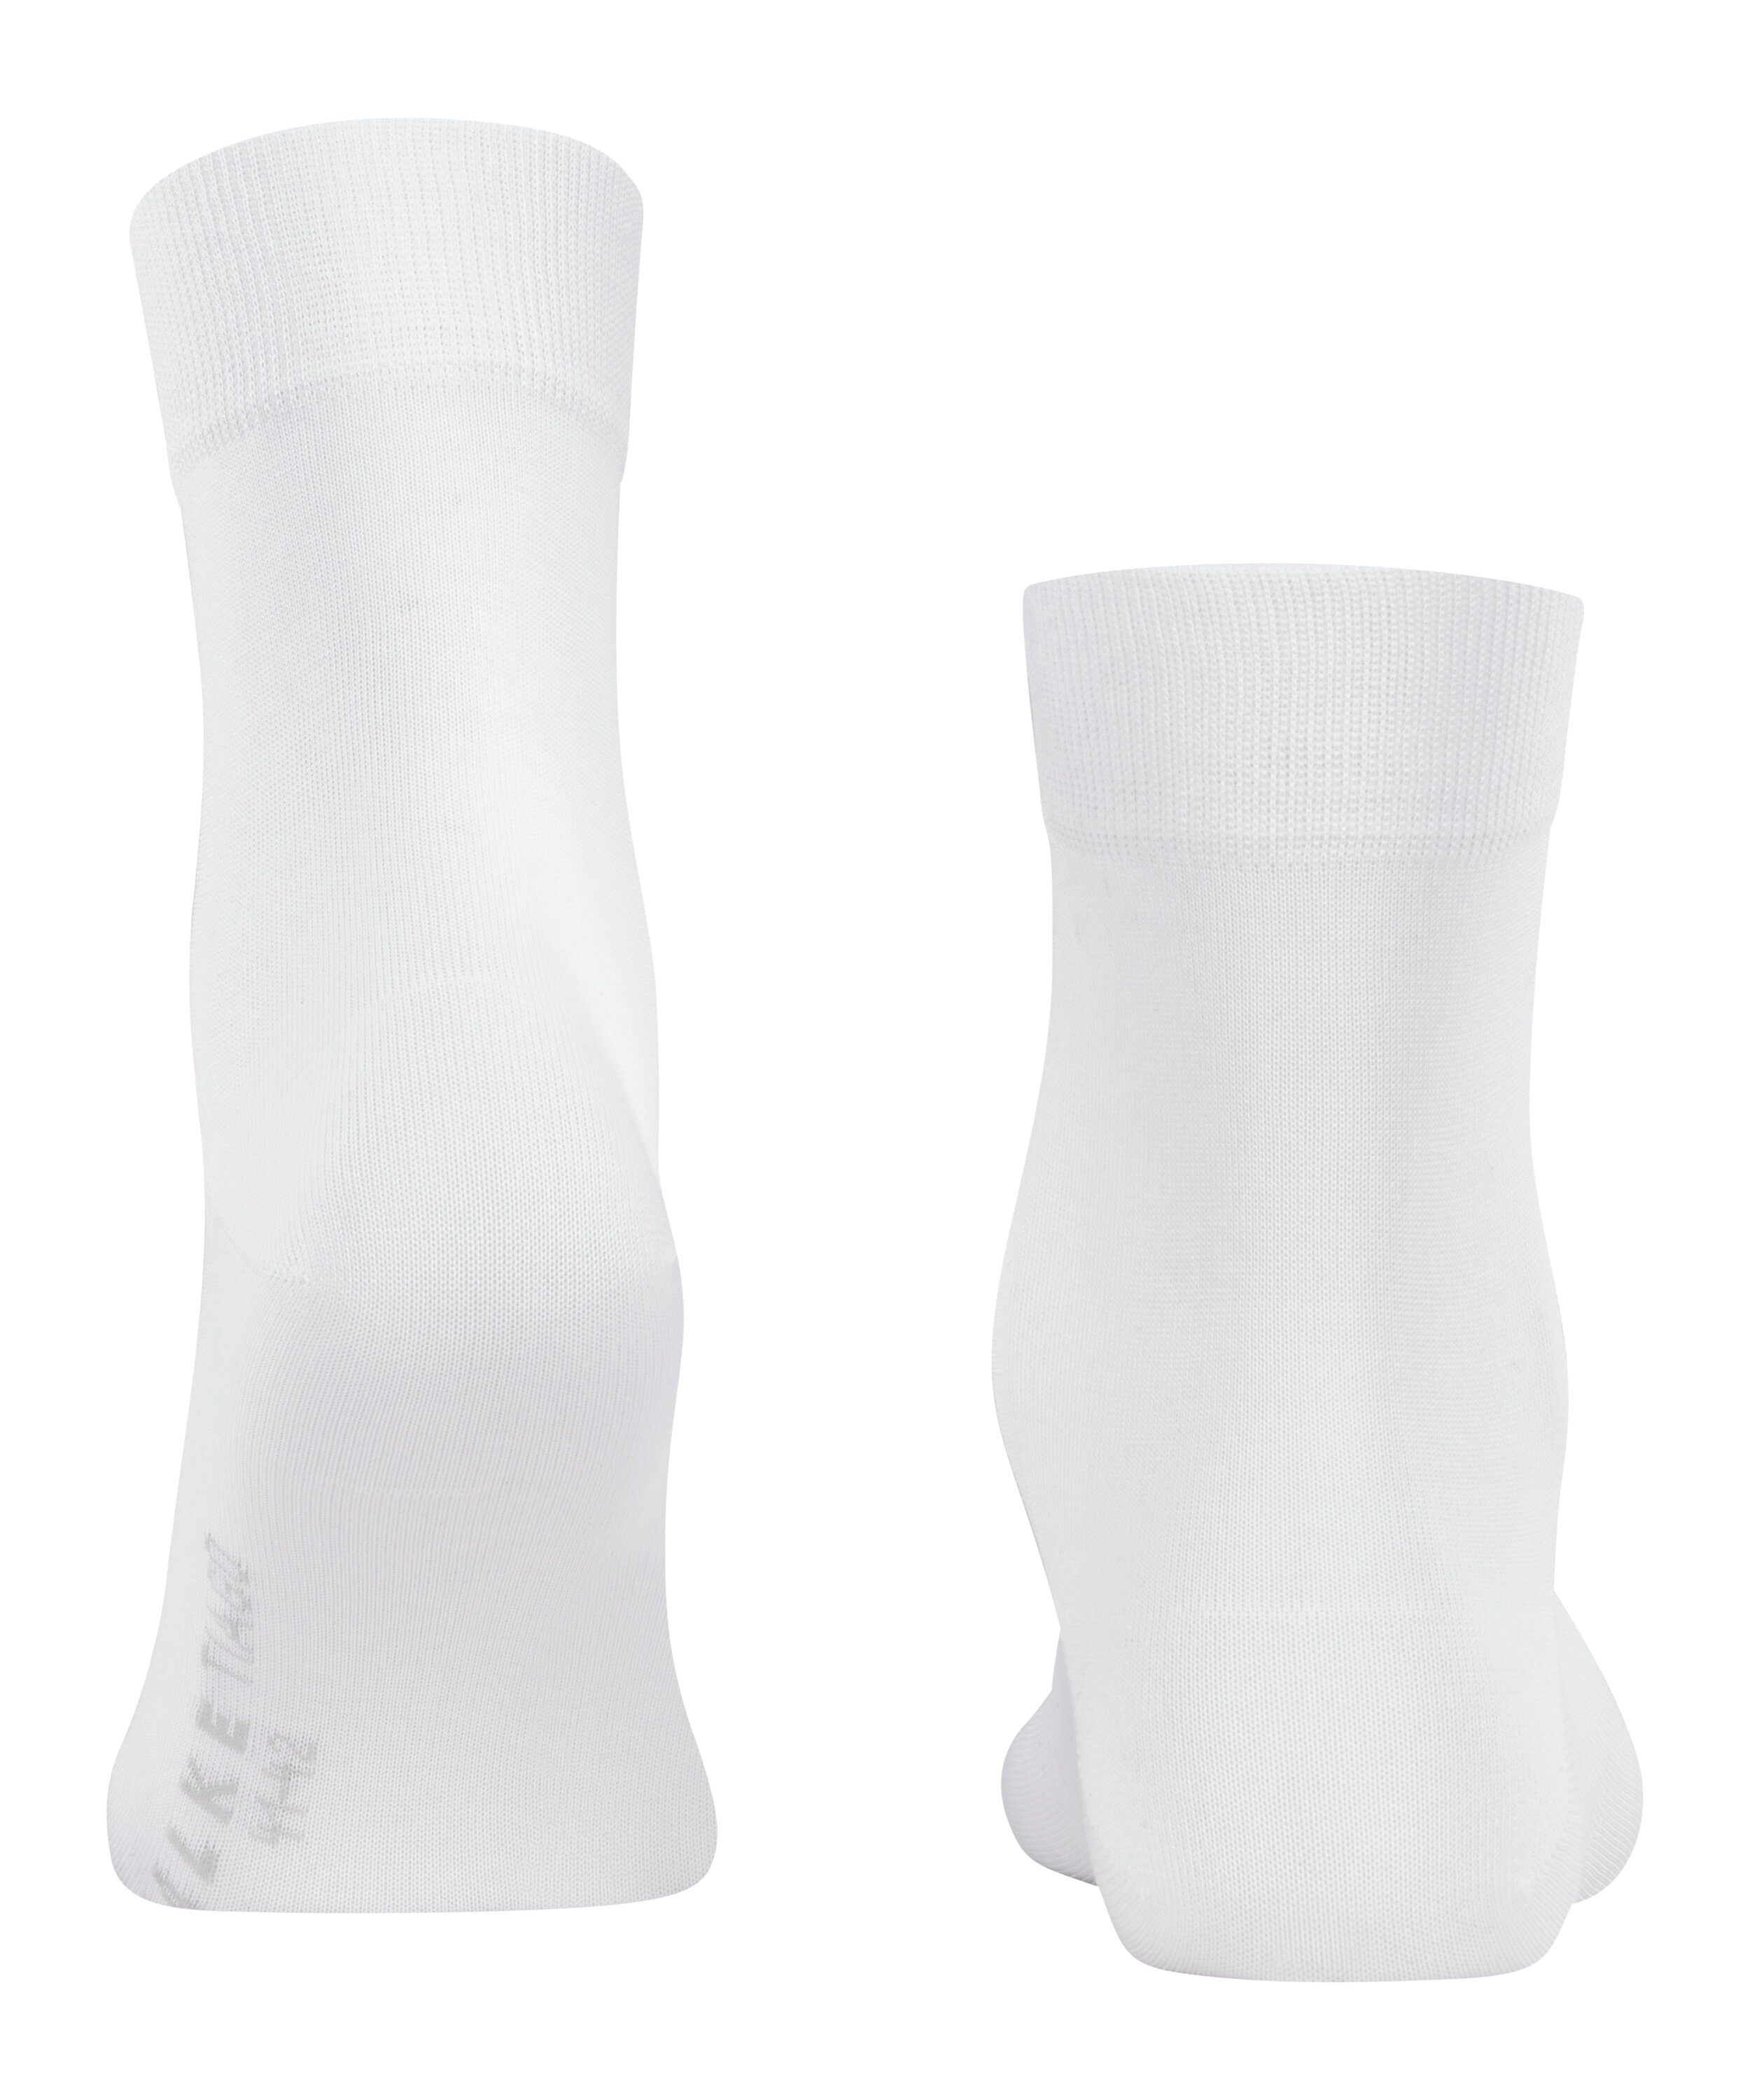 (2000) Tiago FALKE (1-Paar) white Socken